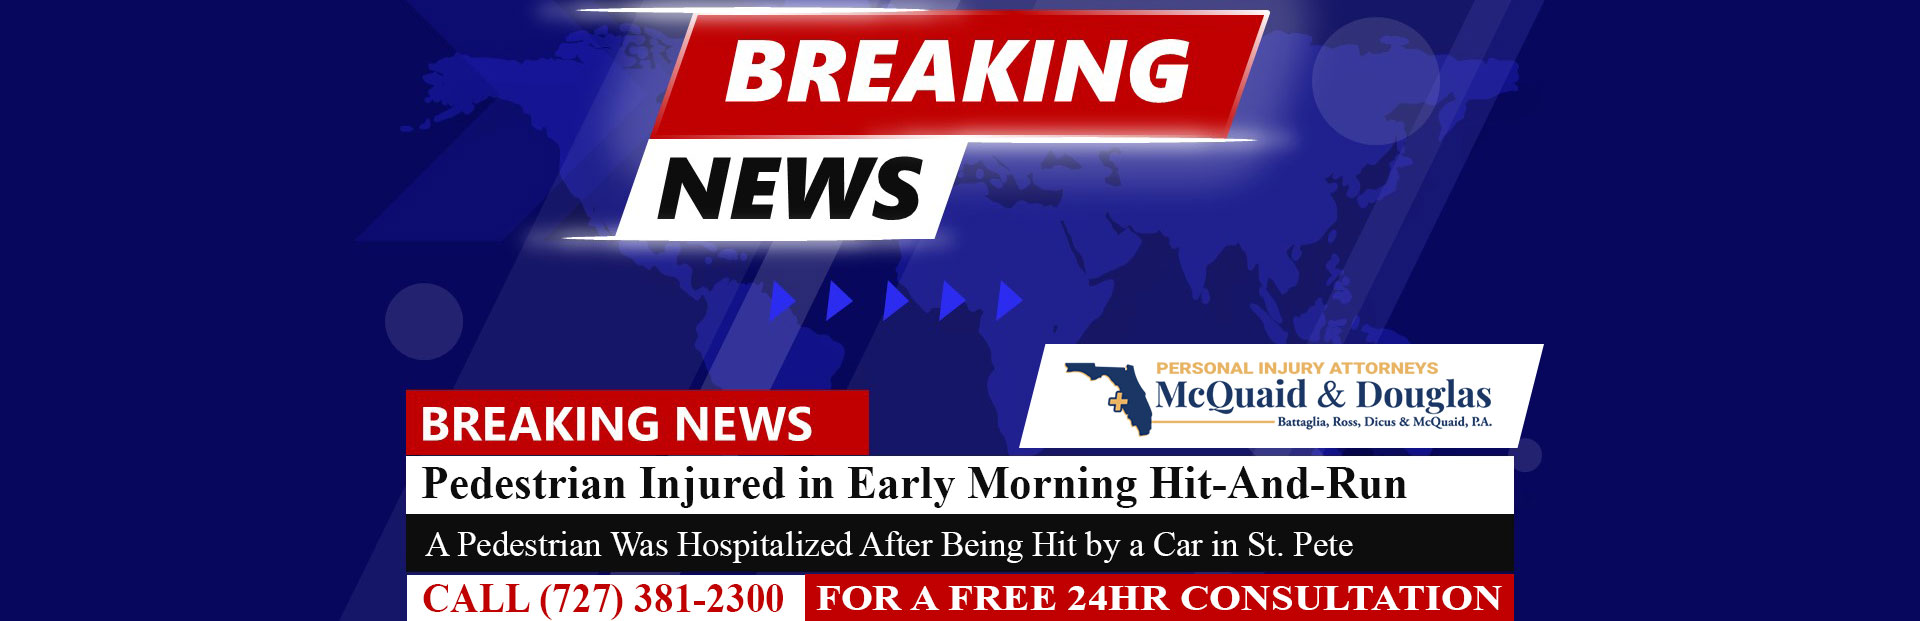 [04-23-24] Peatón herido en atropello y fuga temprano en la mañana en St. Pete